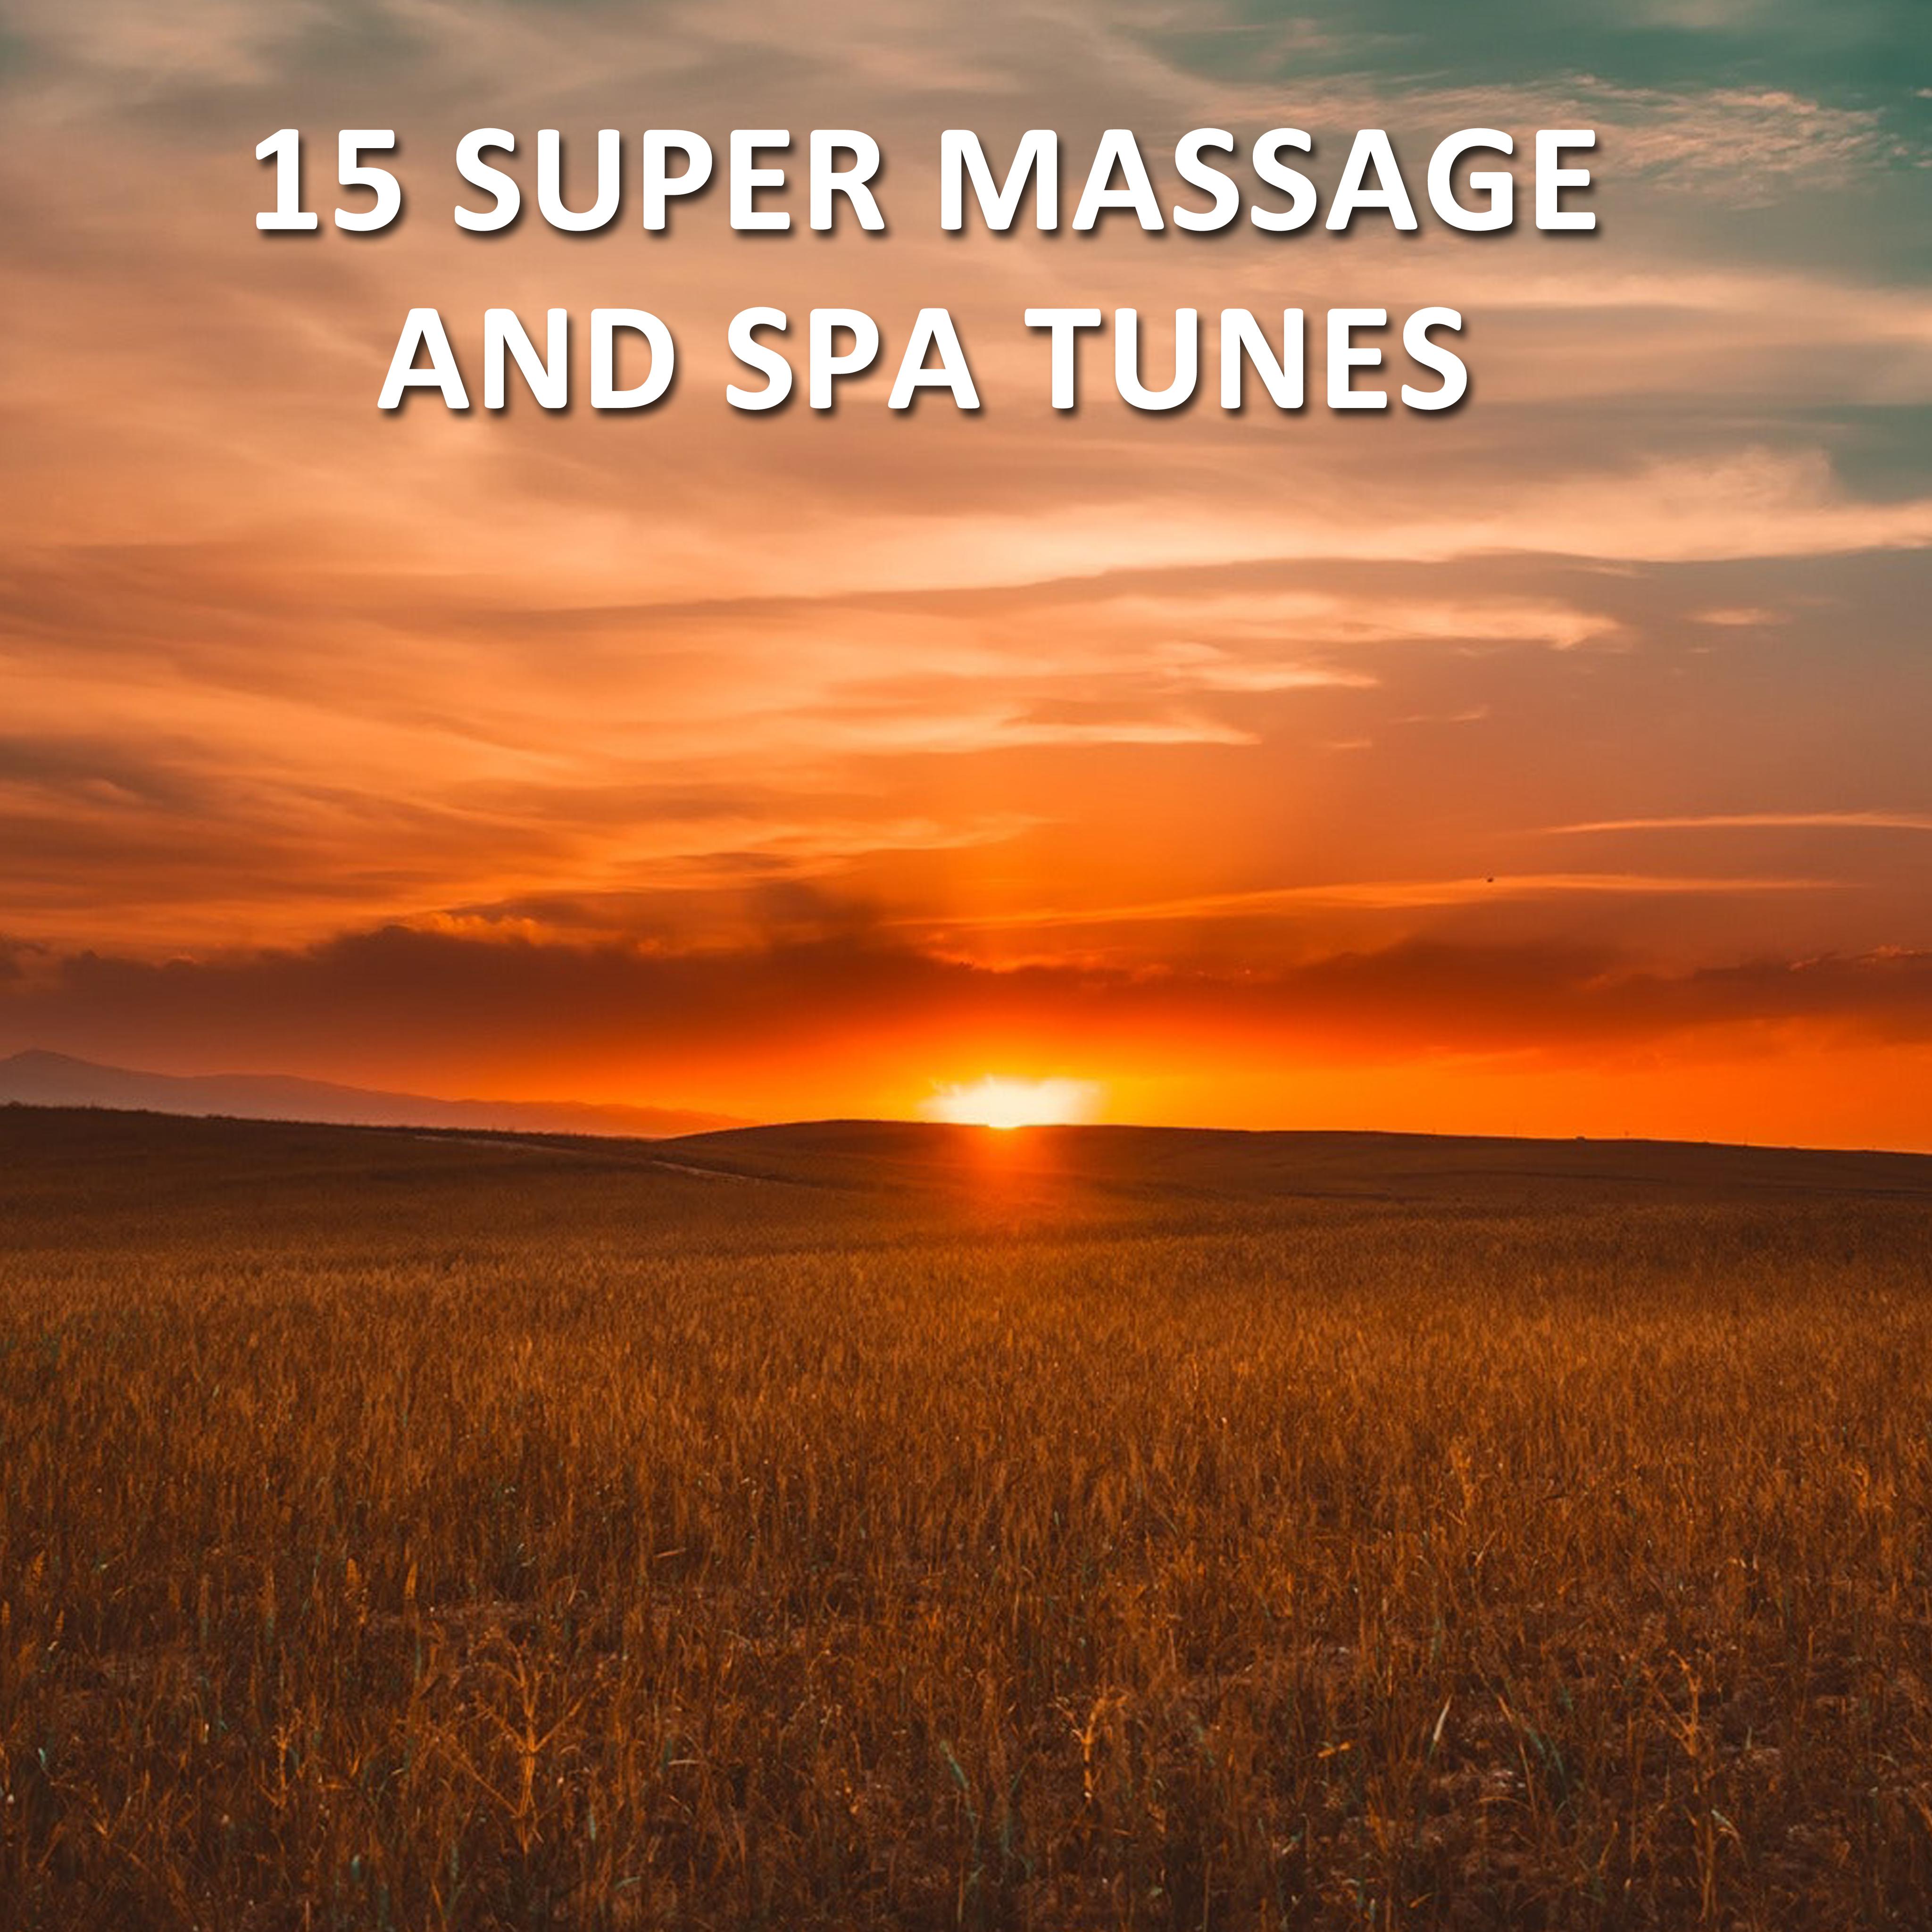 15 Super Massage and Spa Tunes